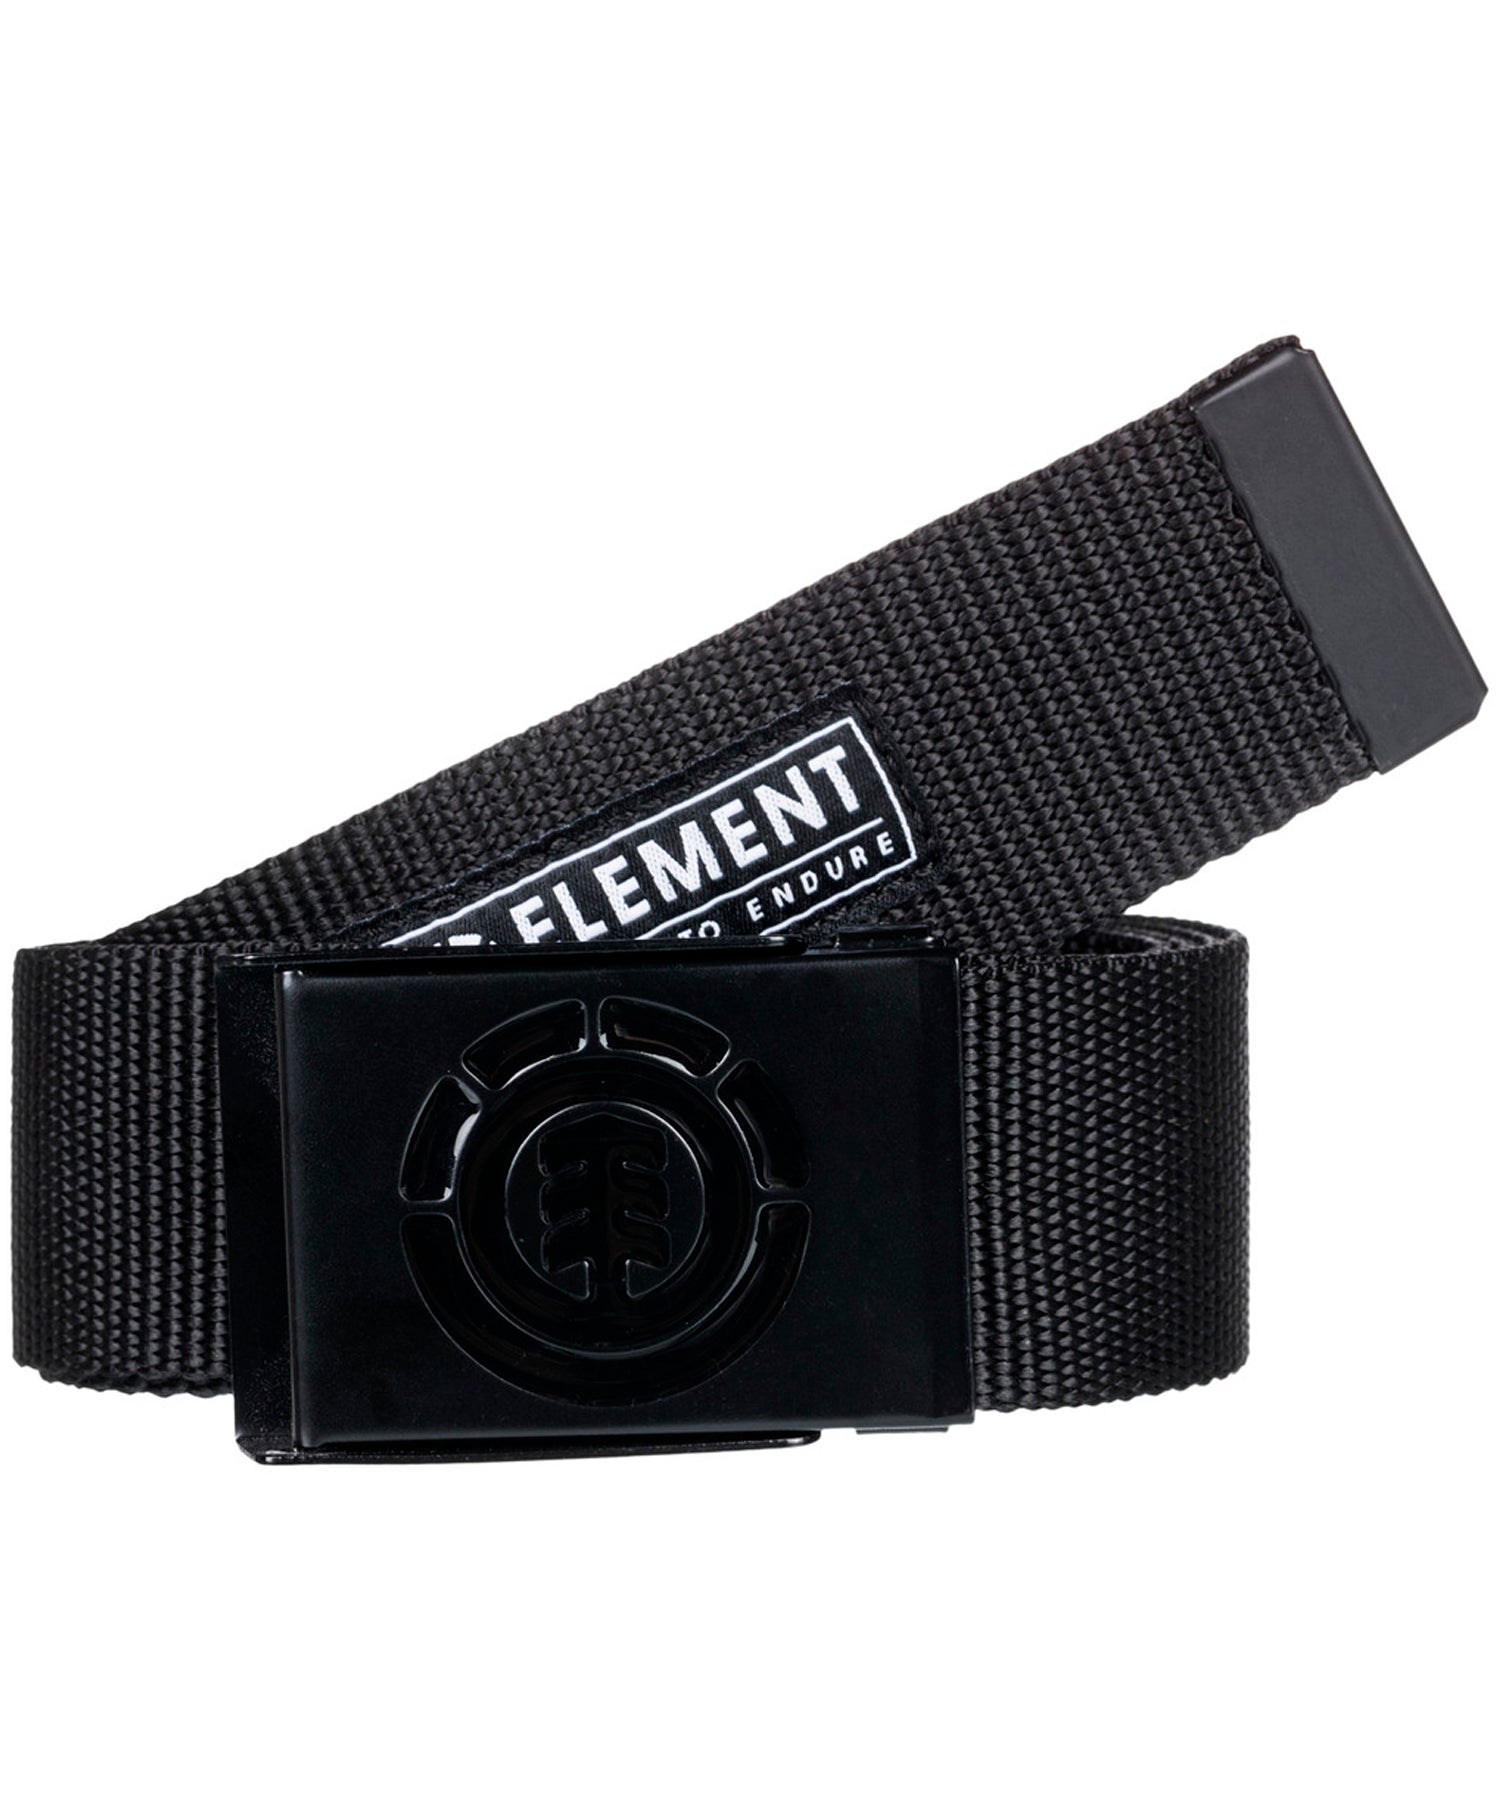 element-cinturon-beyond-color-negro-poliester-y-hebilla-metalica-con-logo-Element-talla-única-hasta-110cm.